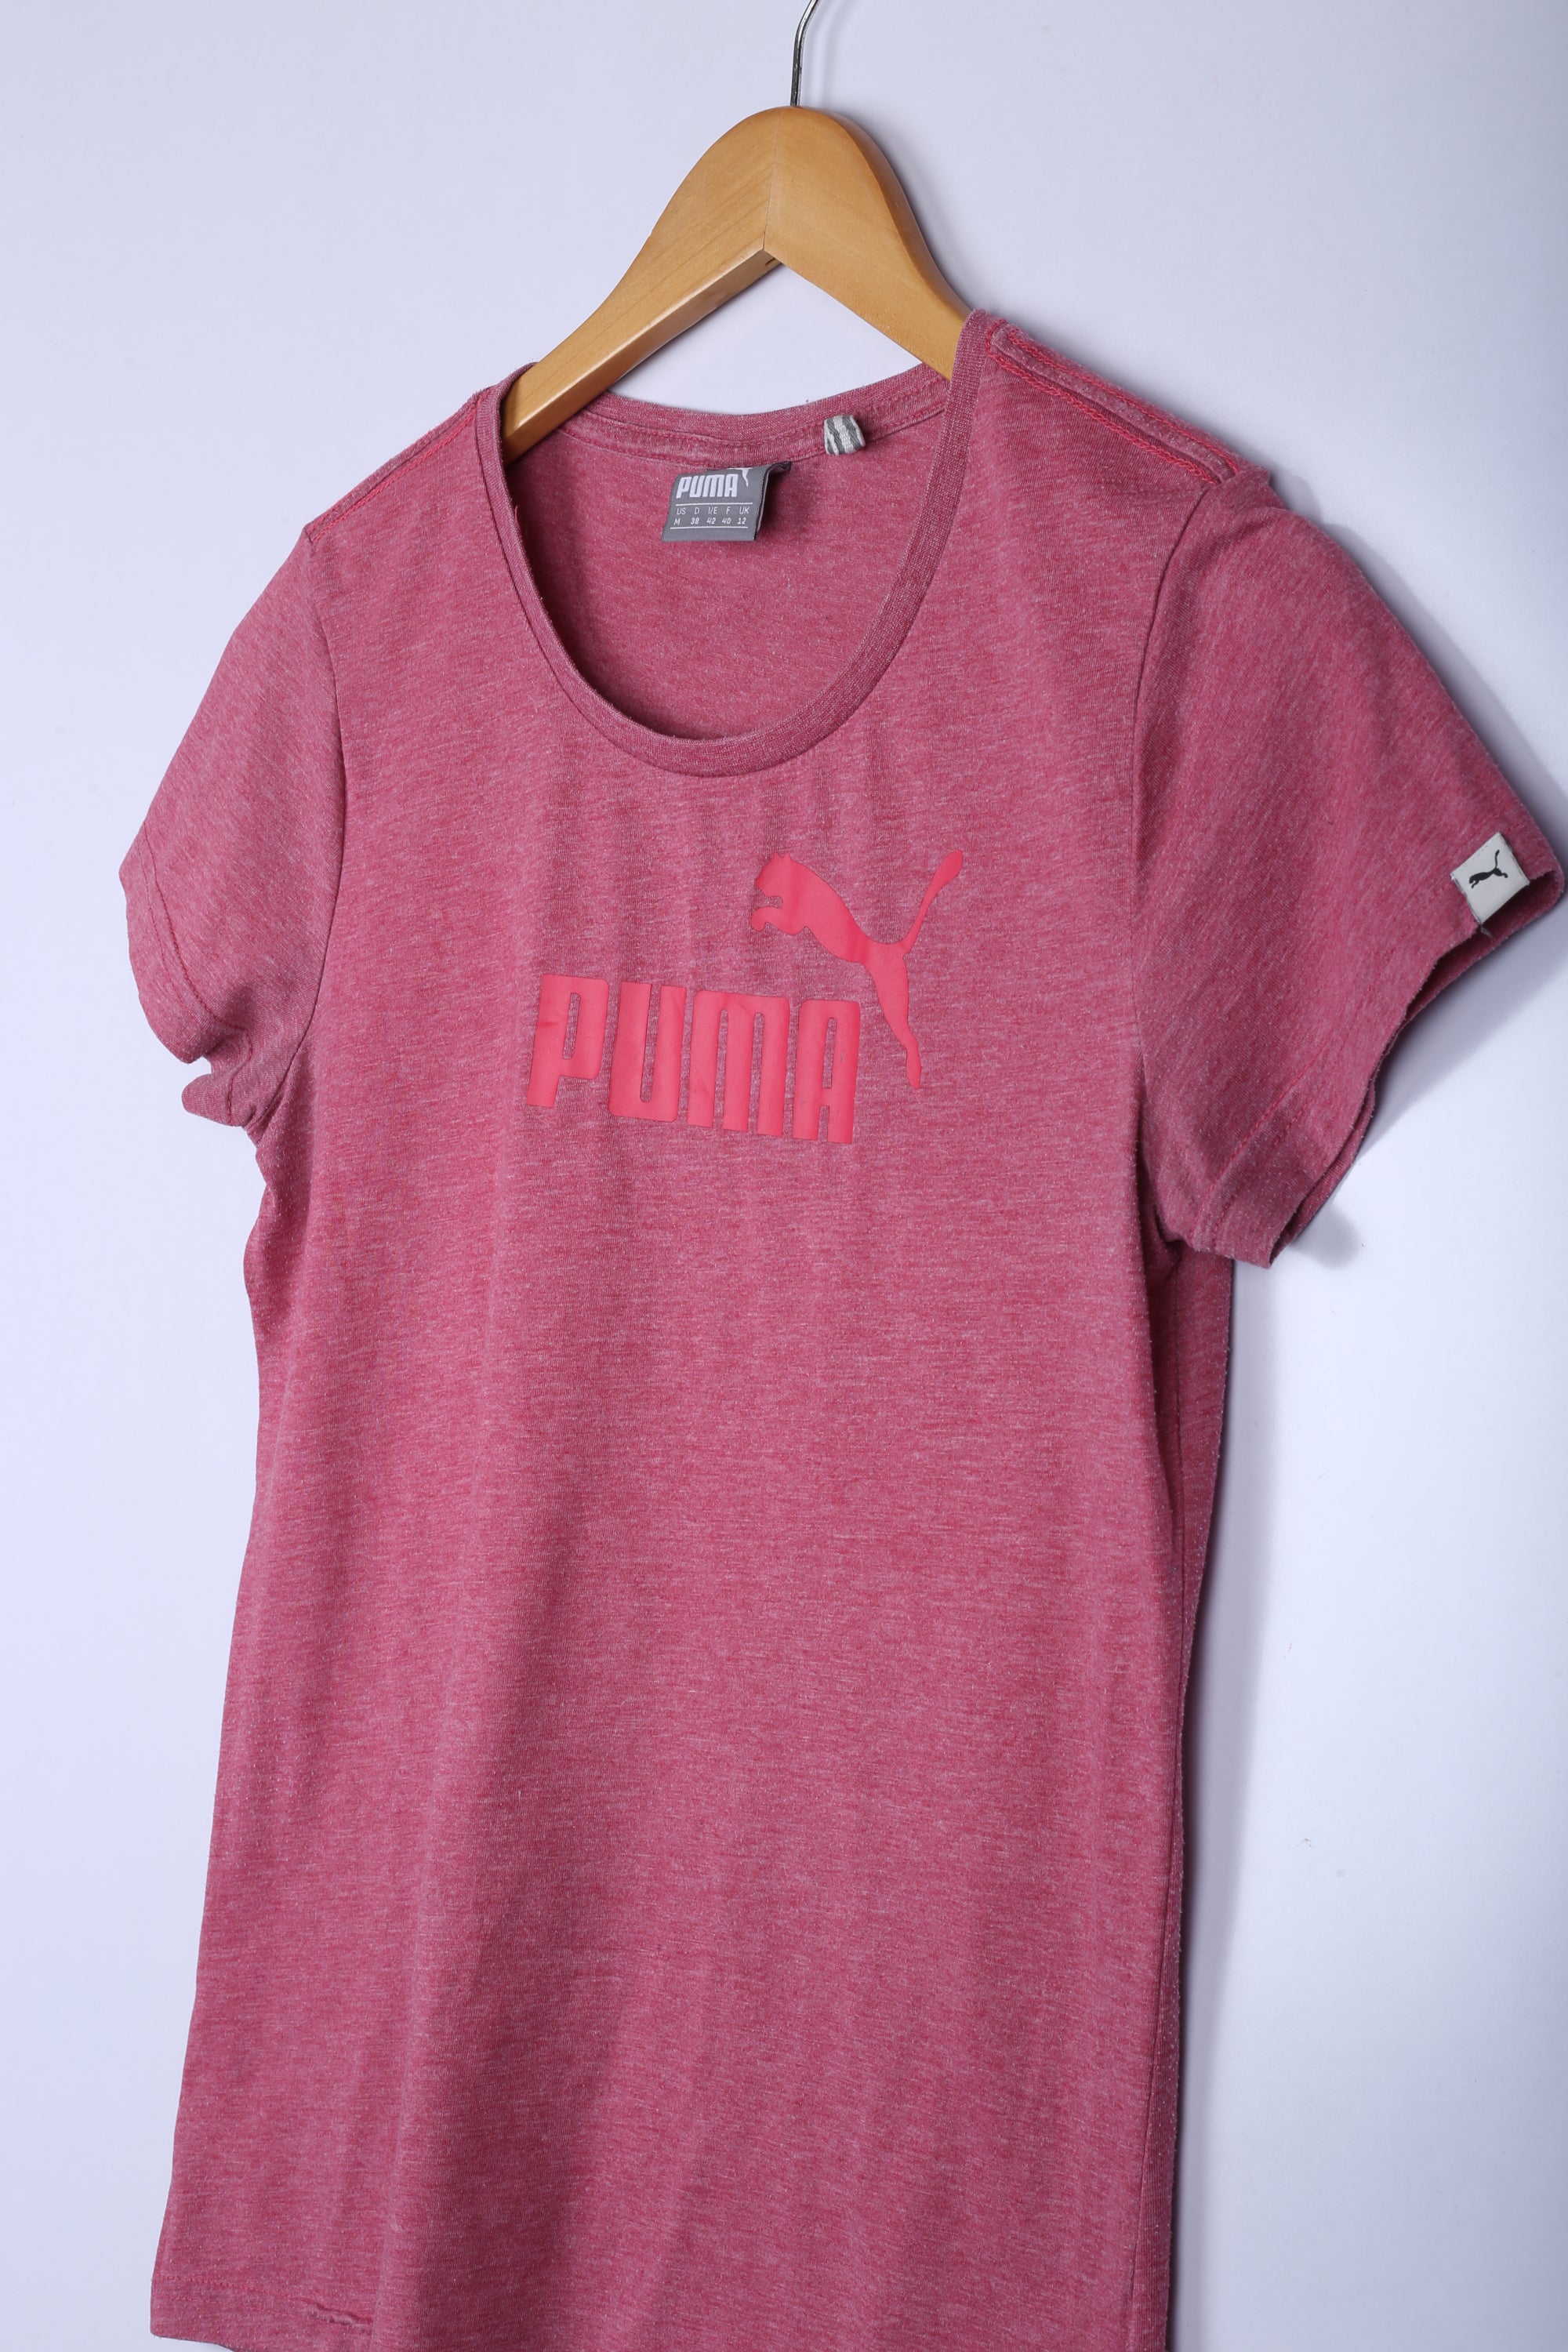 Vintage 00's Puma Tee Dark Pink